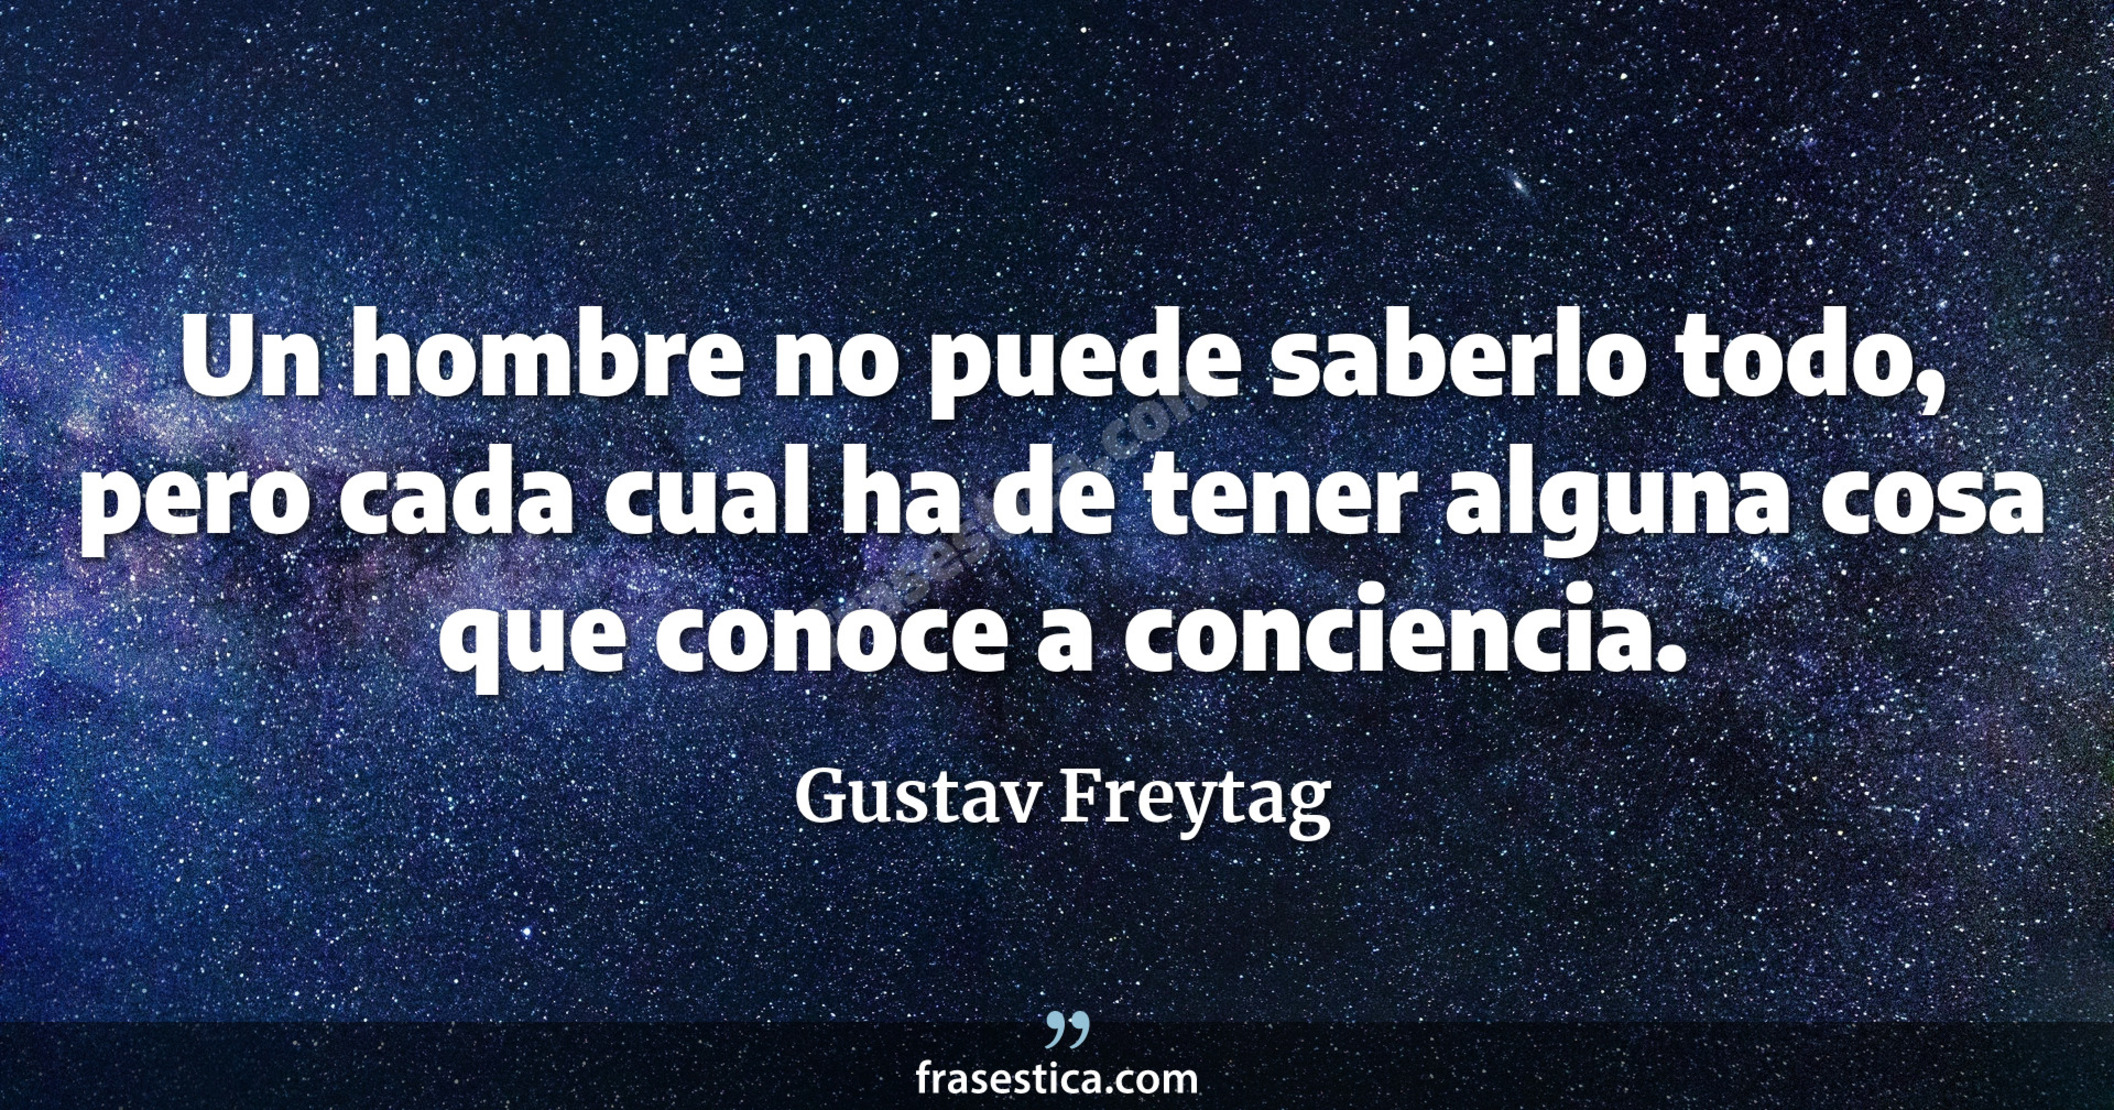 Un hombre no puede saberlo todo, pero cada cual ha de tener alguna cosa que conoce a conciencia. - Gustav Freytag